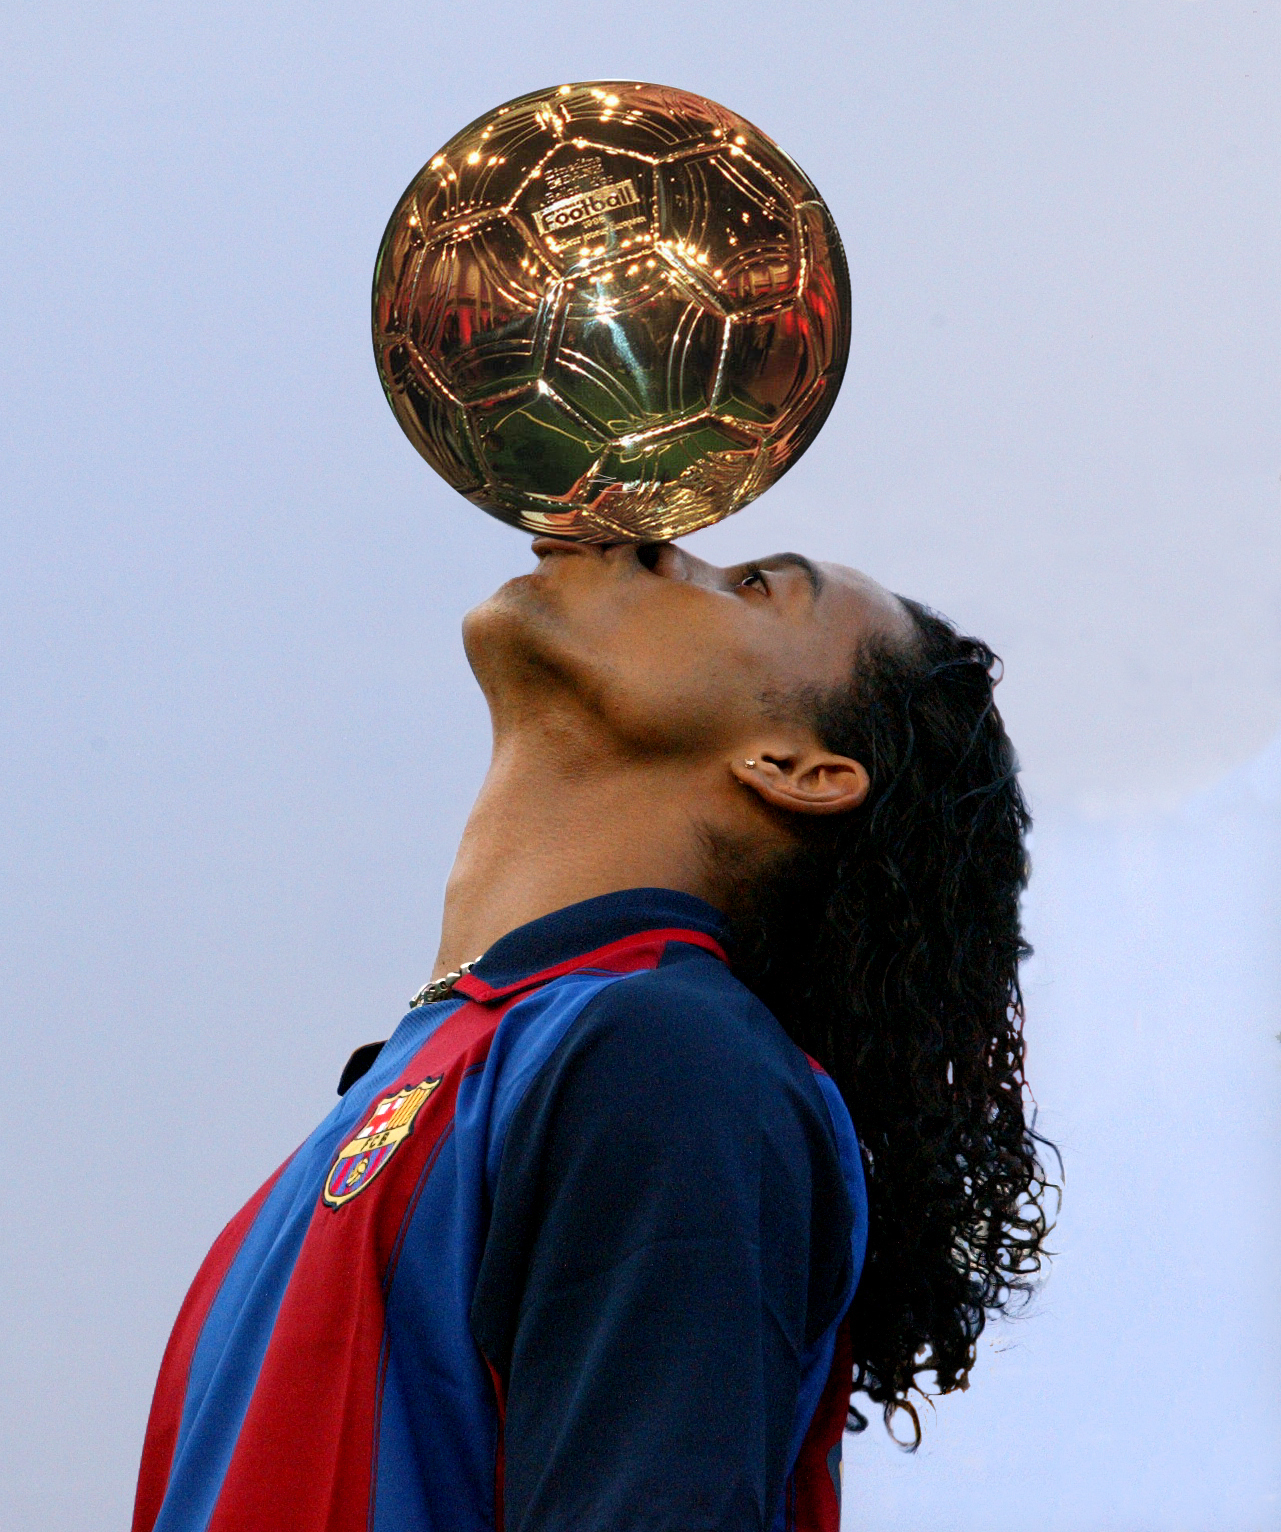 El trofeo Baln de Oro, sostenido por los labios de Ronaldinho.